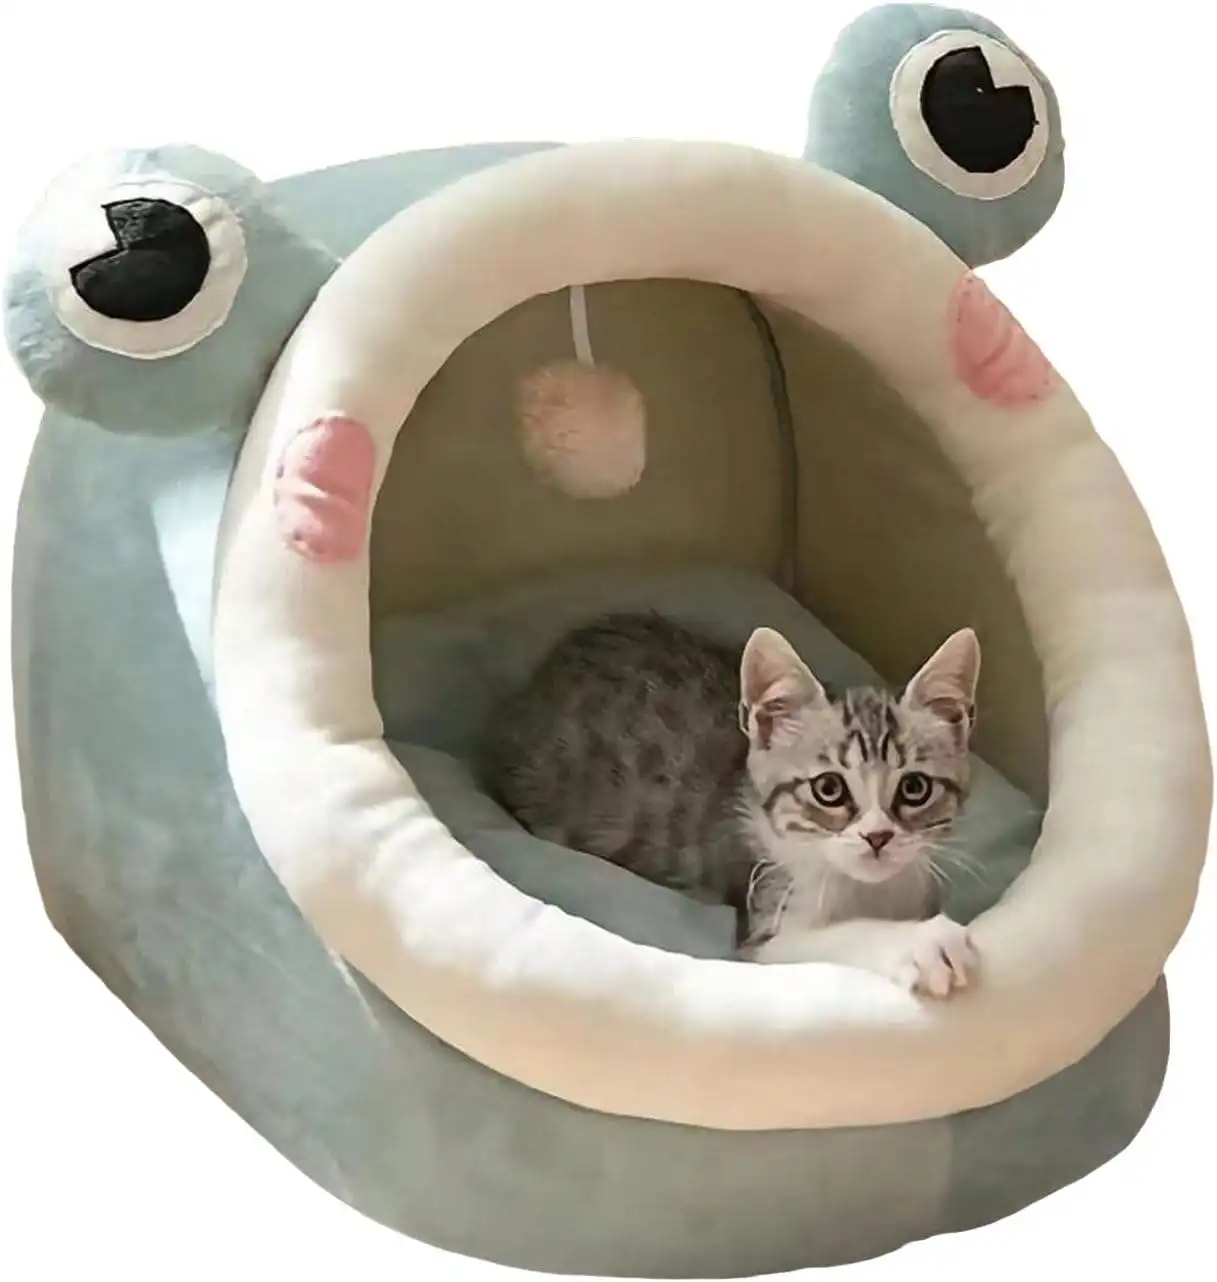 새로운 만화 귀여운 작은 공룡 모양의 애완 동물 고양이 집 용품 사계절 따뜻하고 편안한 애완 동물 고양이 침대